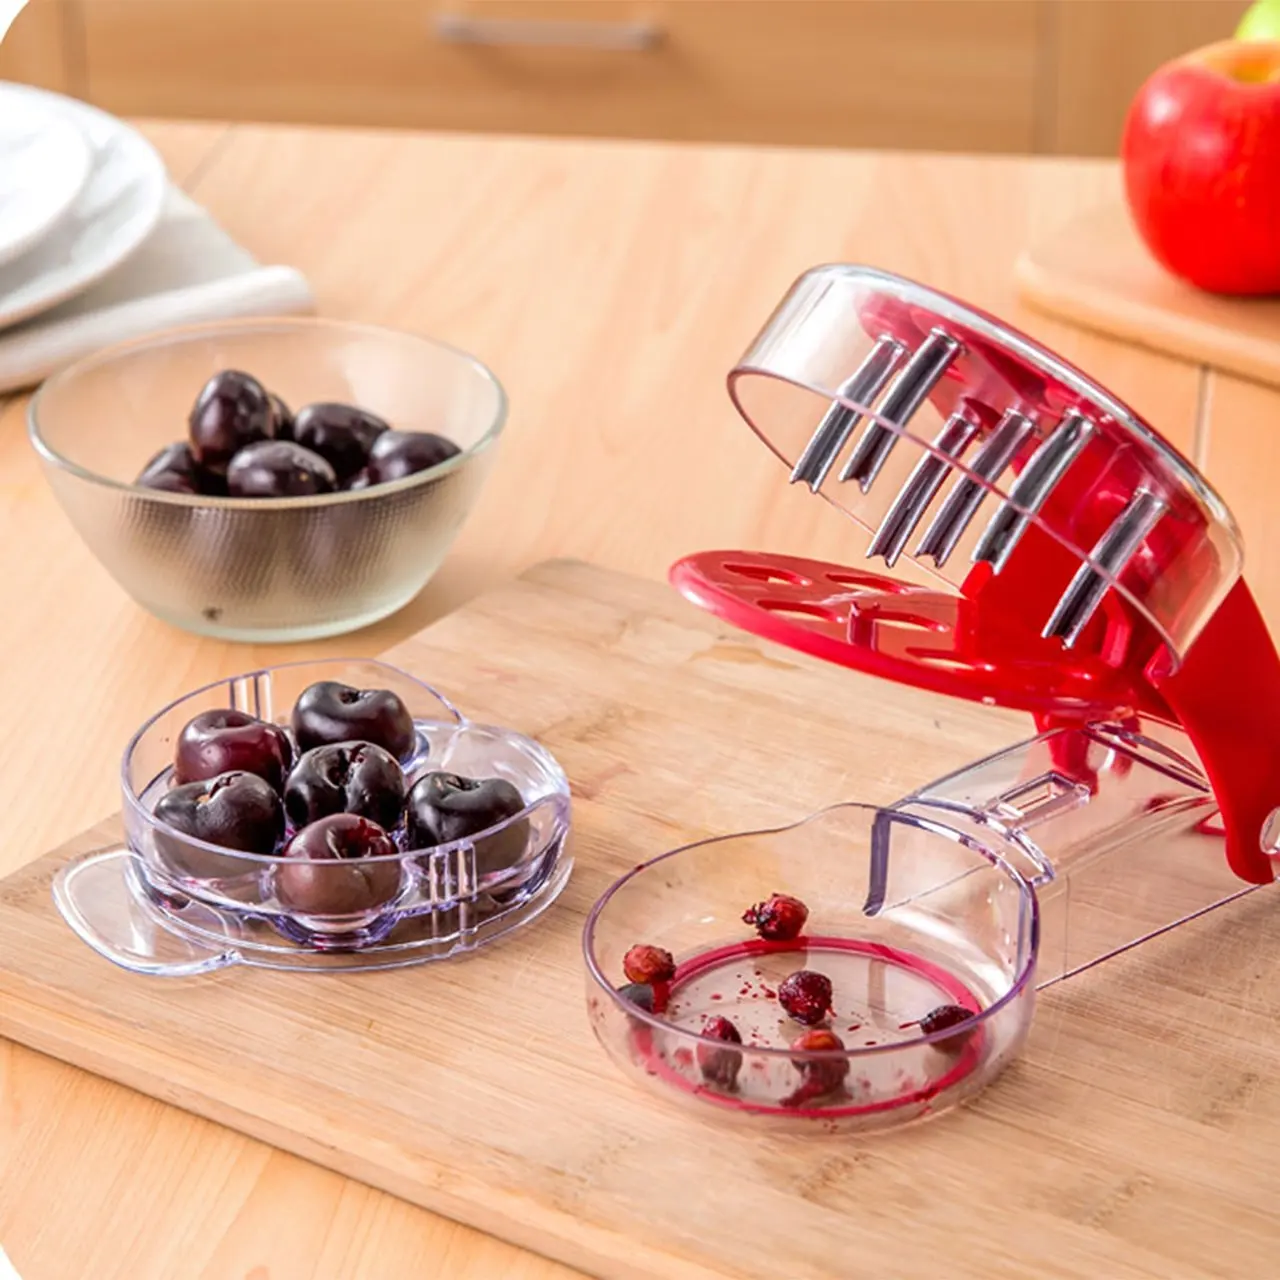 

Инструмент для удаления косточек из вишни и оливковой косточки, кухонный прибор для удаления косточек и фруктов, кухонные аксессуары